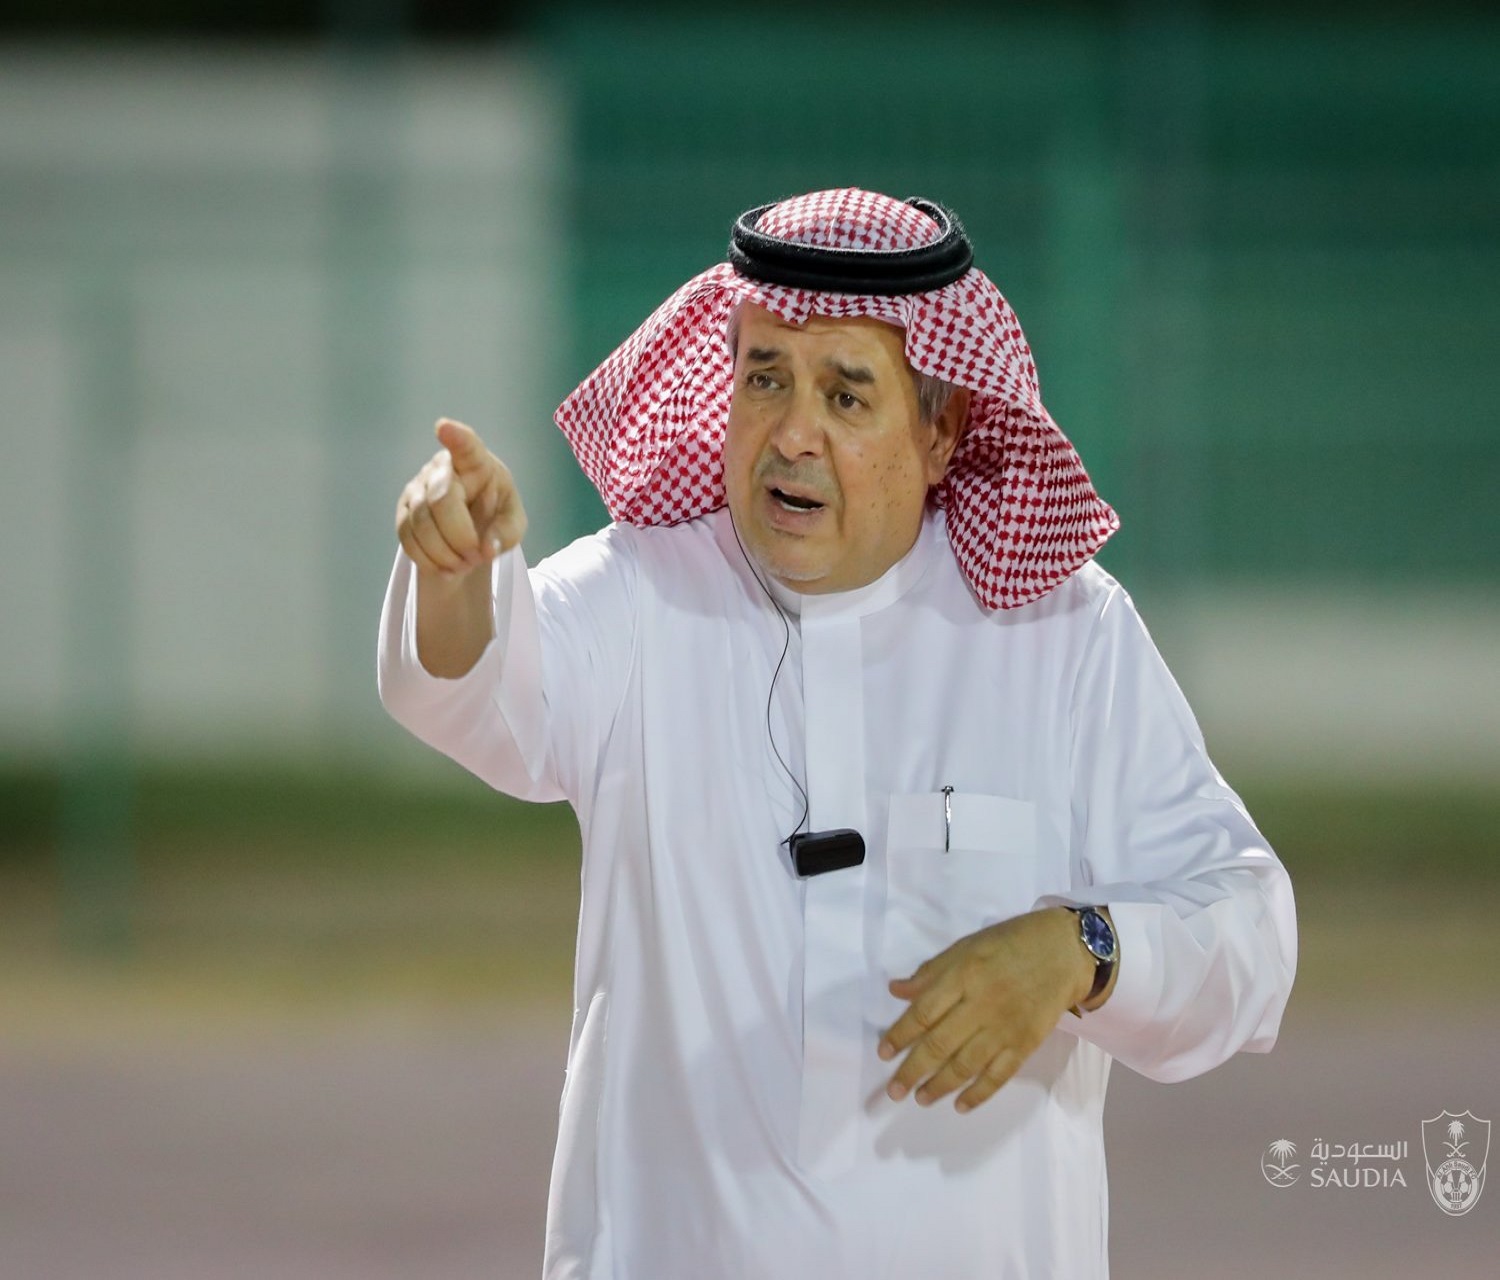 منصور بن مشعل منتقدًا الصائغ: يُسهر اللاعبين ولم يُنفذ وعوده